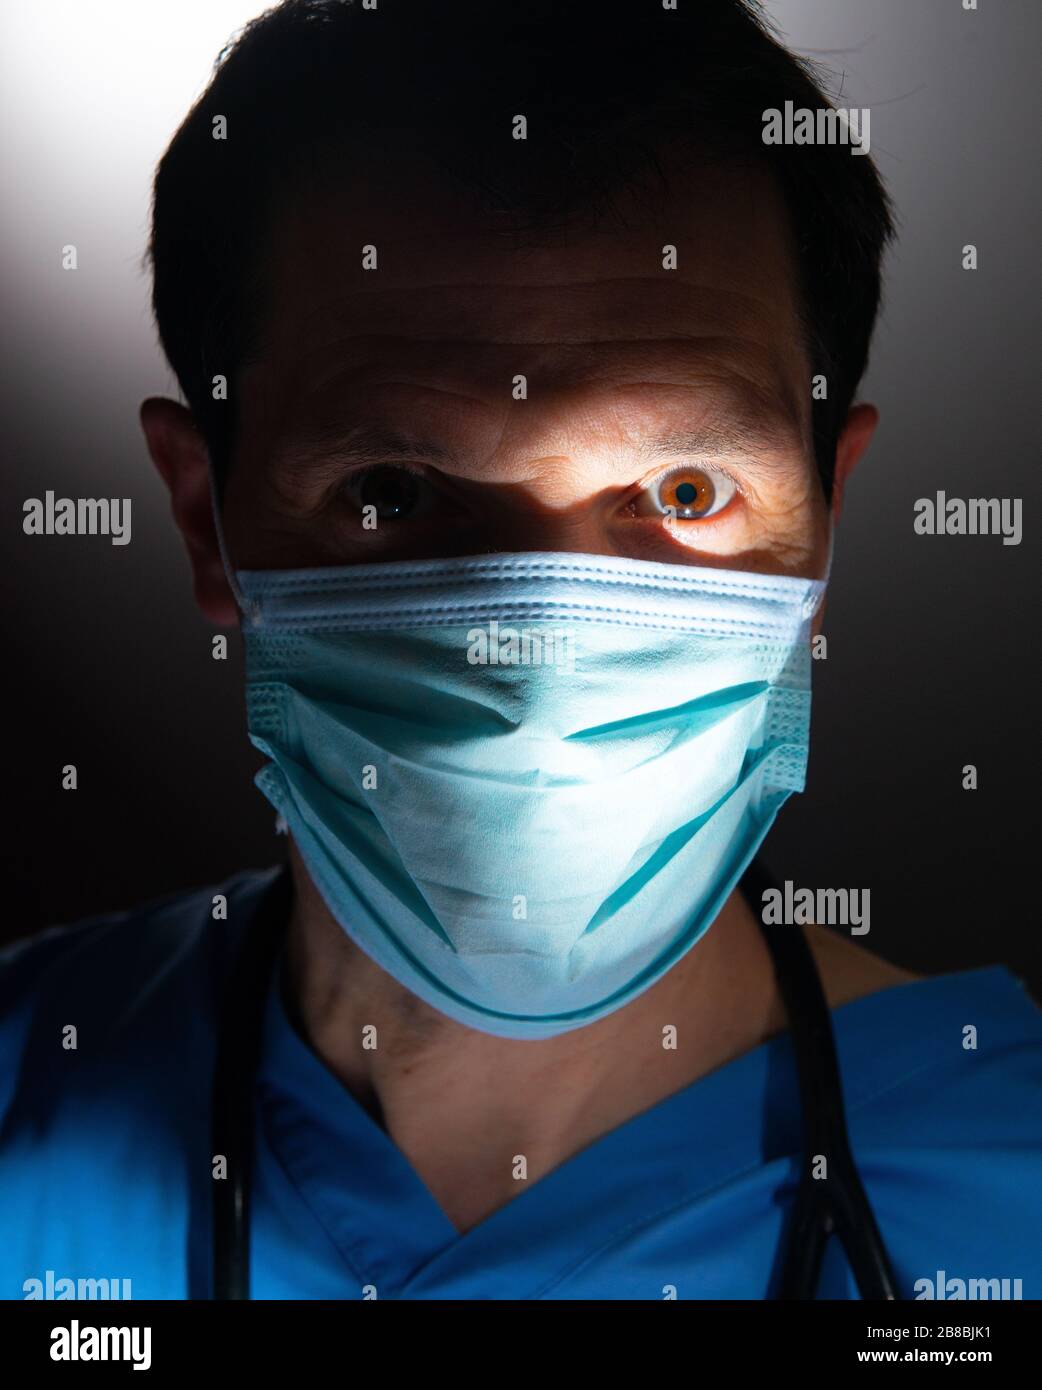 Nahaufnahme eines betroffenen Arztes mit Halbgesicht im Schatten und mit blauen Schruben, mit chirurgischer Gesichtsmaske und Stethoskop, vor dunklem Hintergrund. Stockfoto